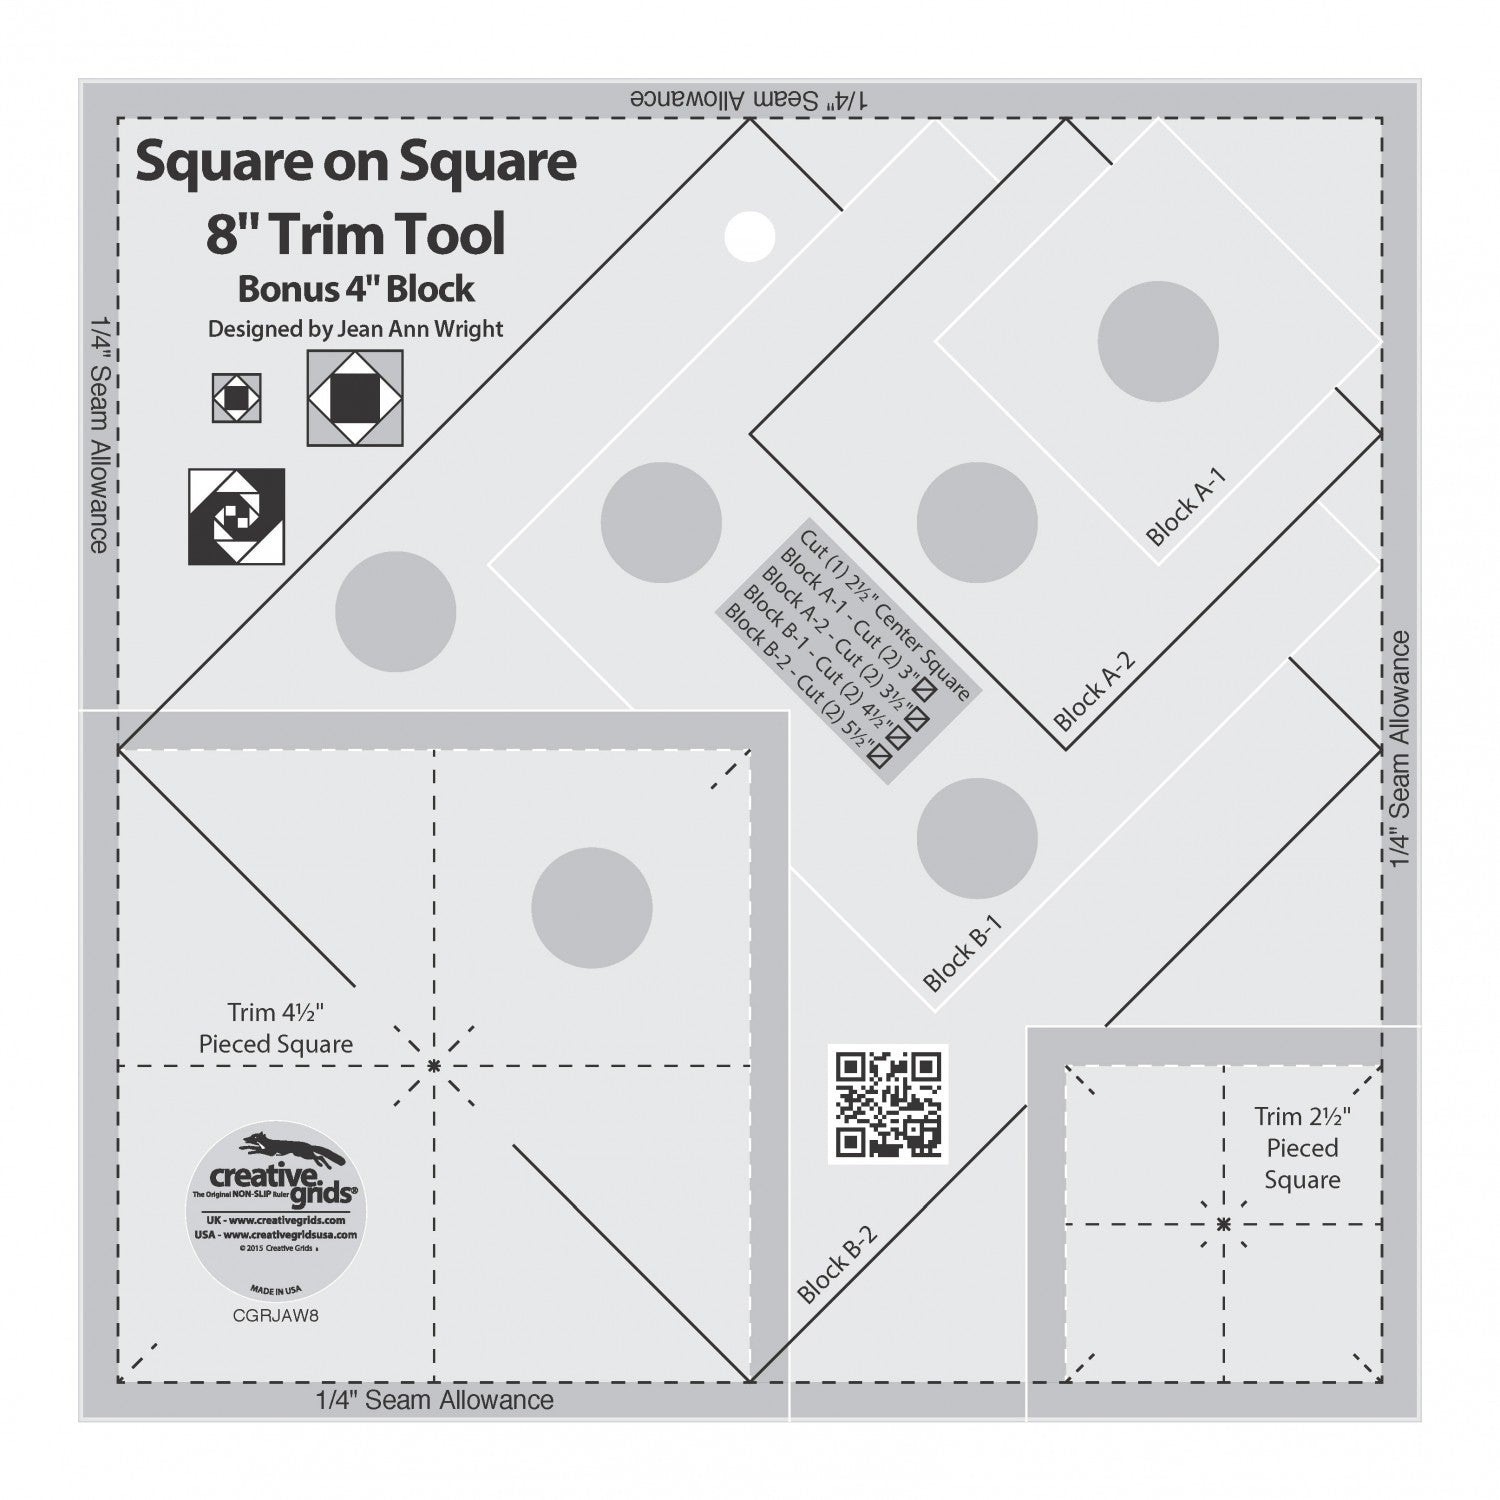 Square on Square 8" Trim Tool